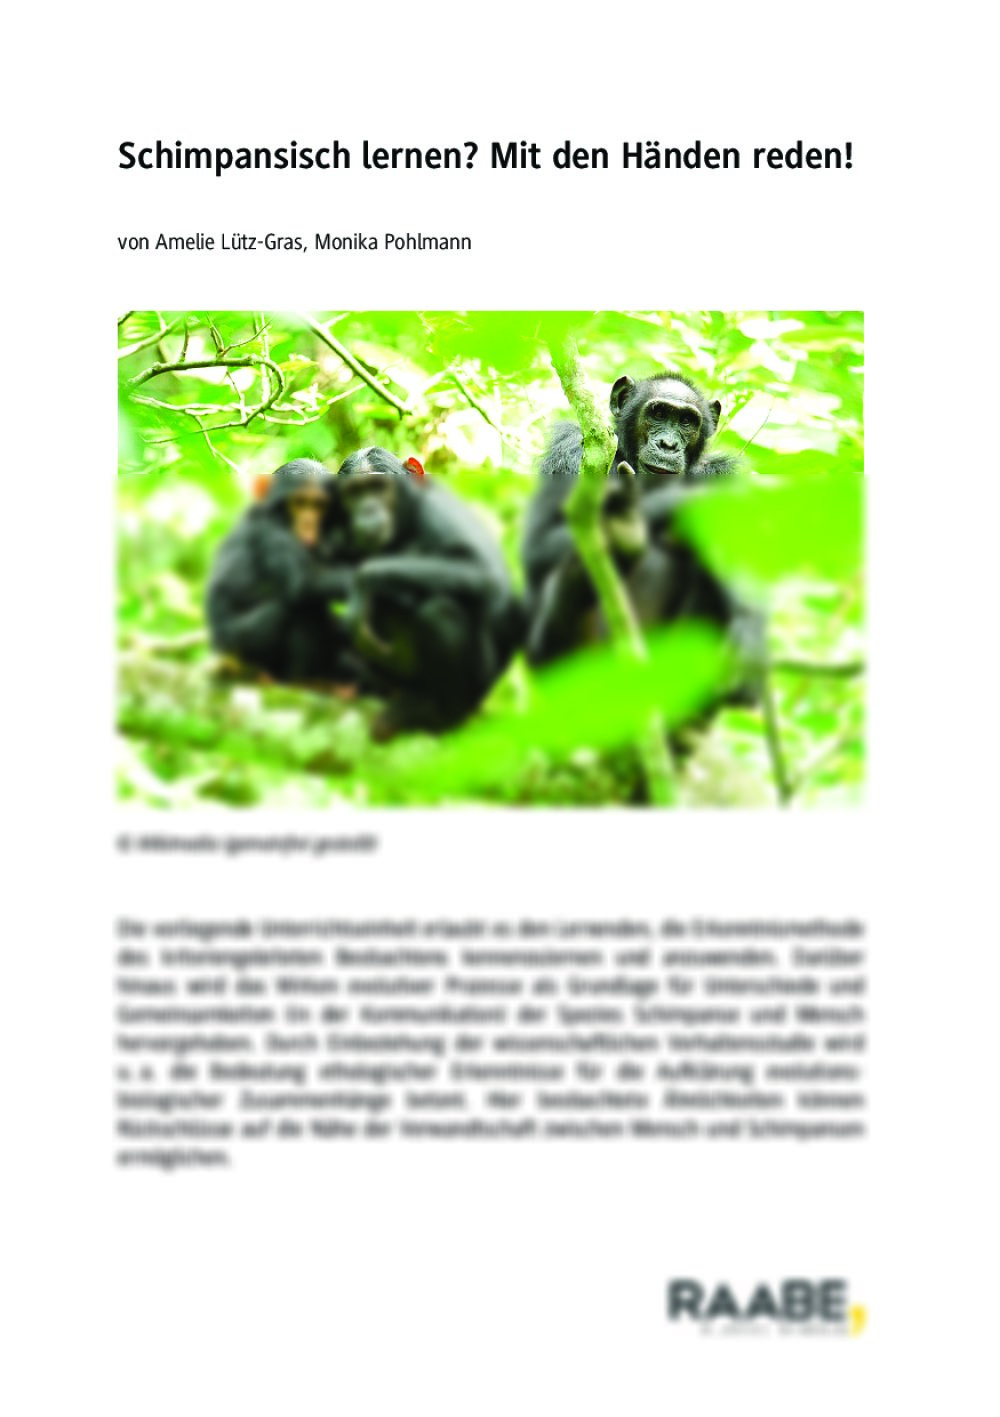 Die Sprache der Schimpansen - Seite 1